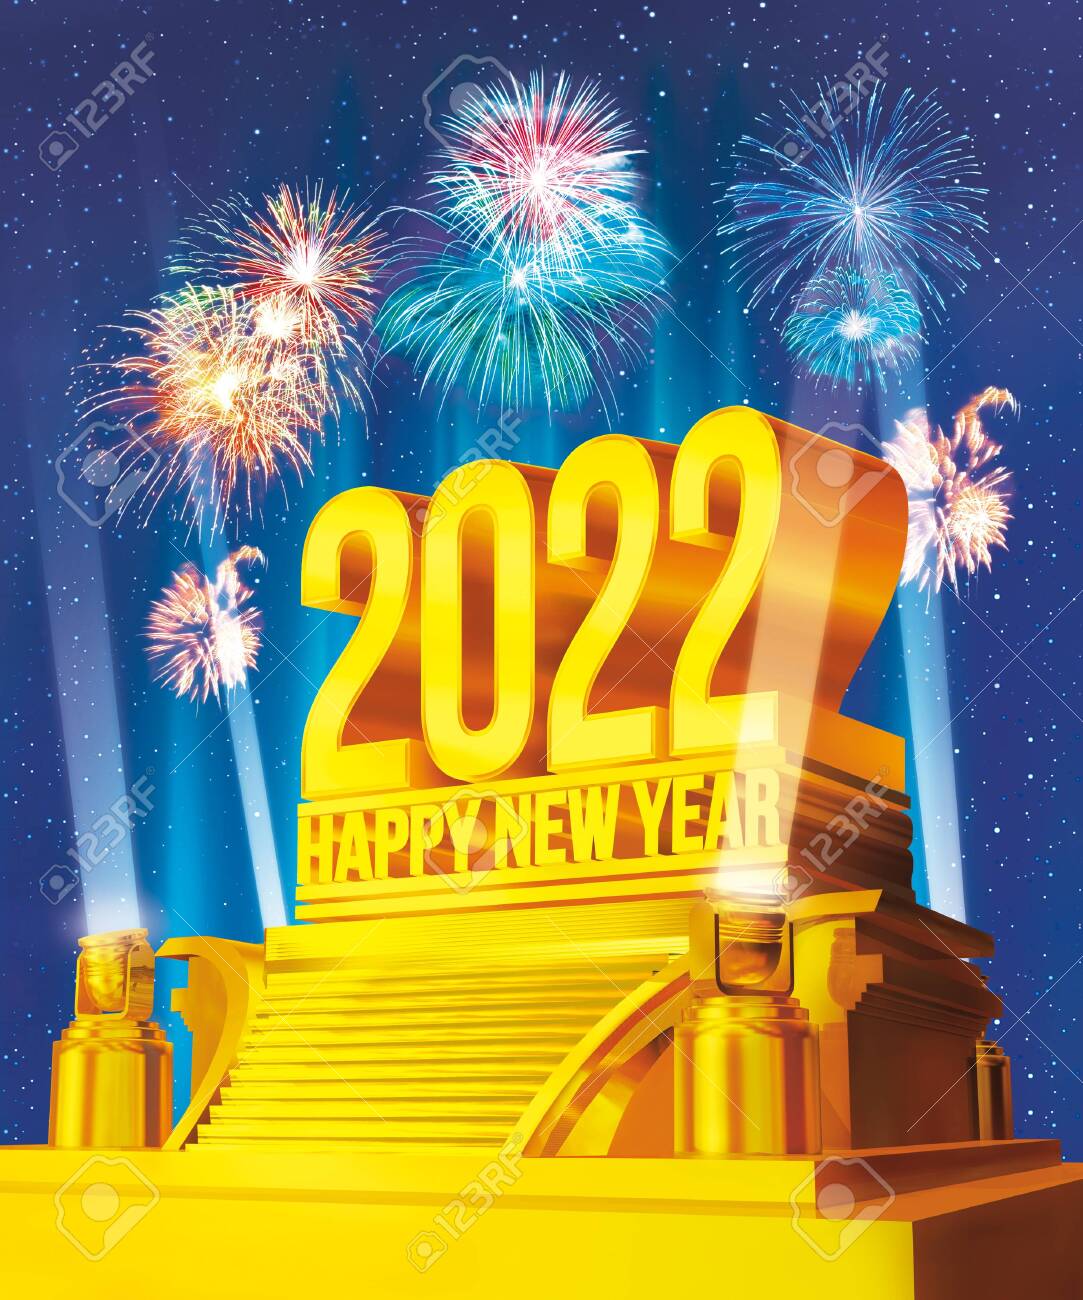 صور بطاقات تهنئة بمناسبة راس السنة الميلادية 2022